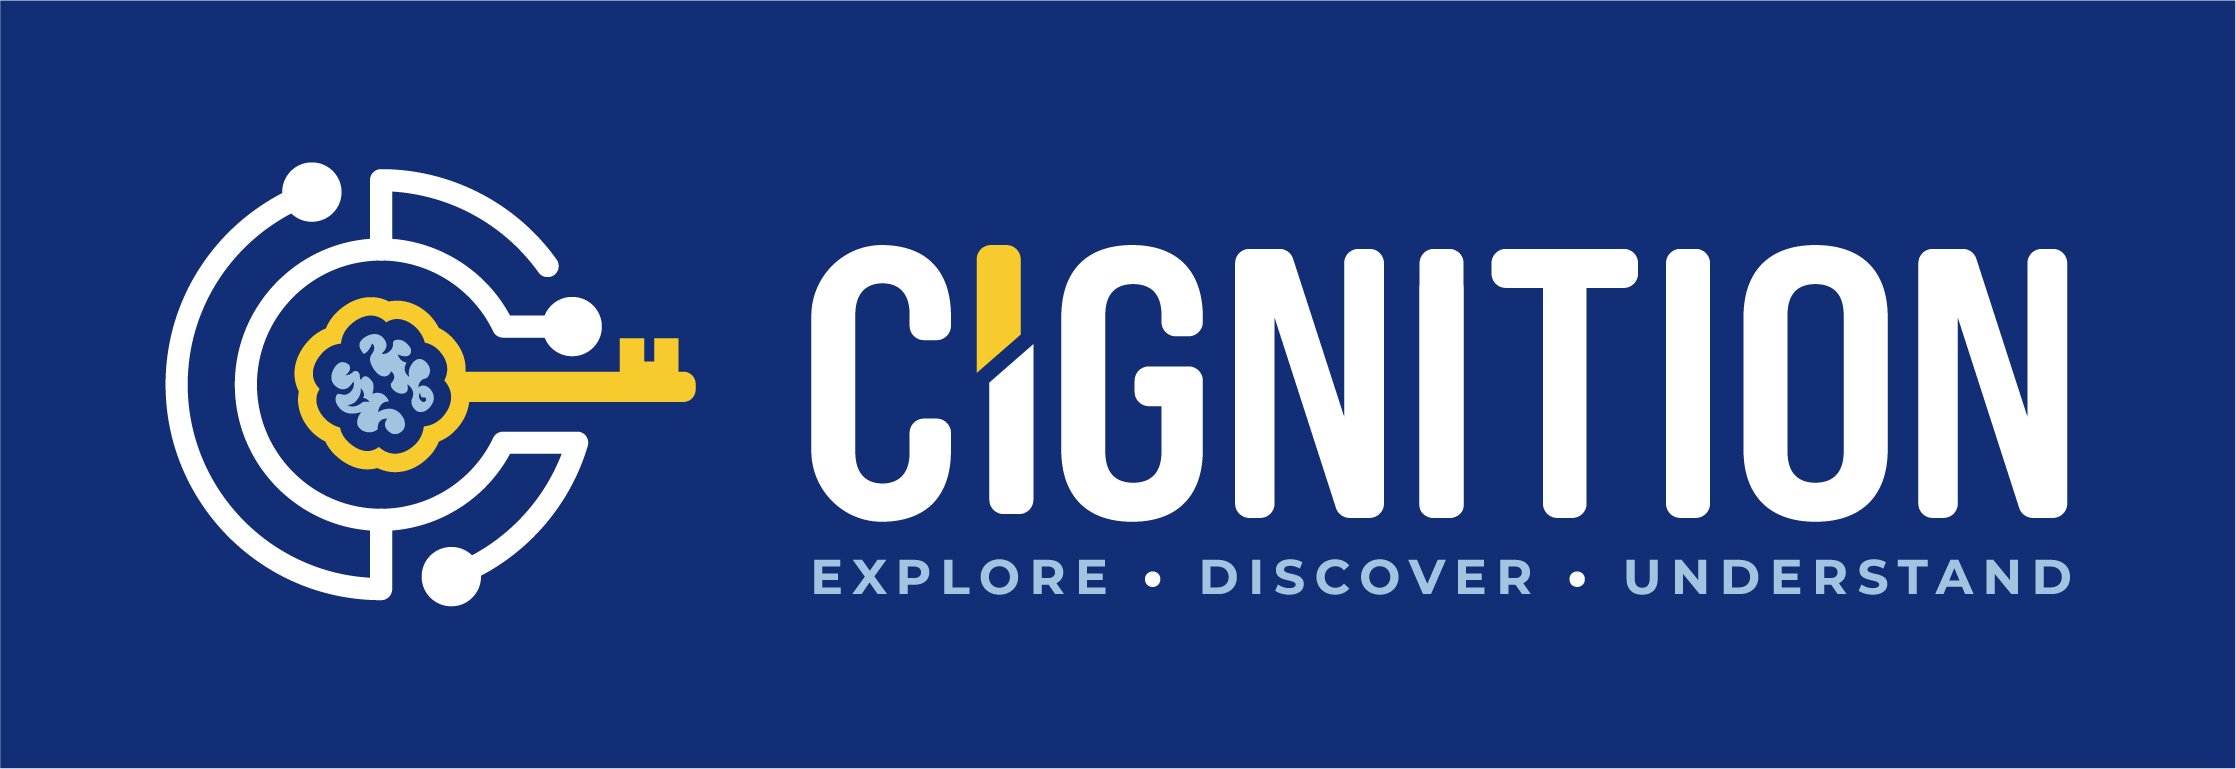 Cignition Inc logo